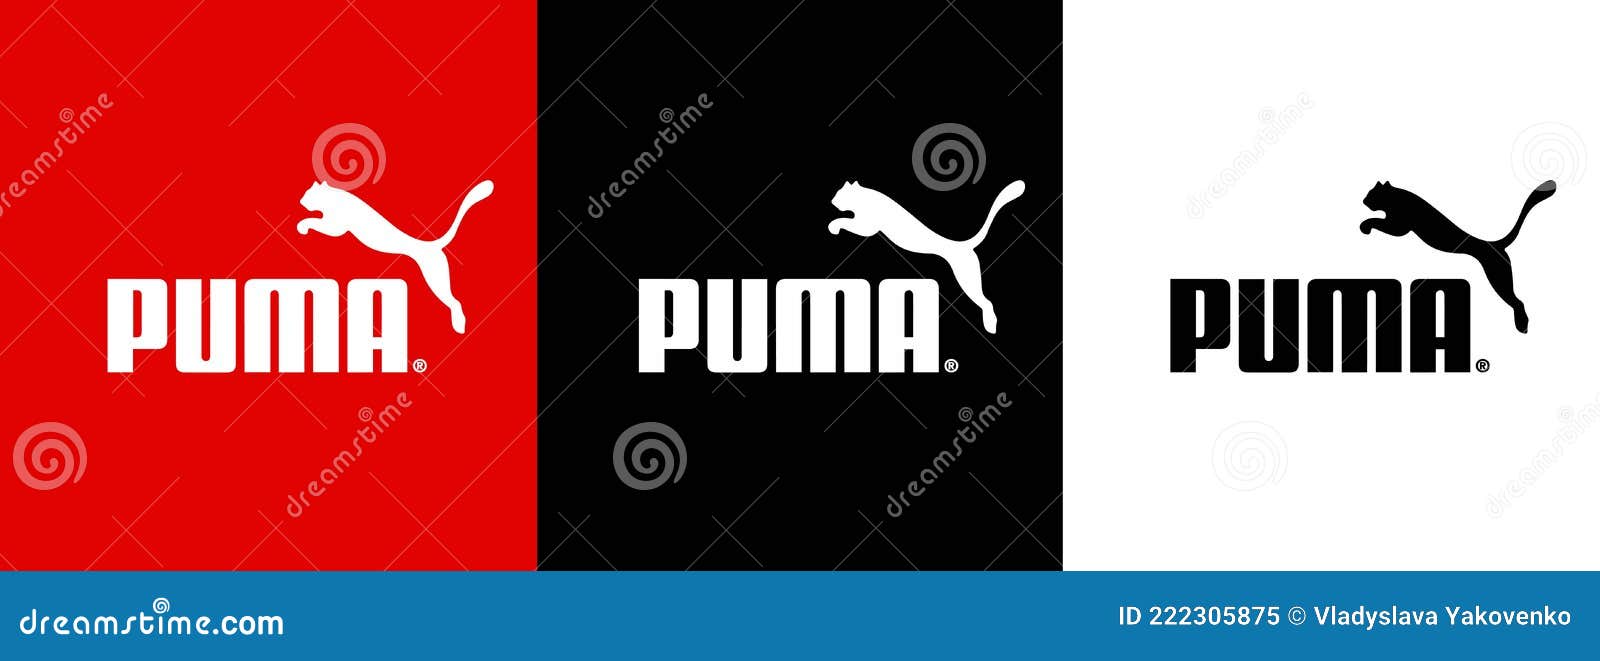 Conjunto De De Marca Deportiva. Logo De La Compañía De Material Deportivo Y De Ropa Deportiva. Puma. Vector. Zapori Imagen editorial - de calzado, marca: 222305875